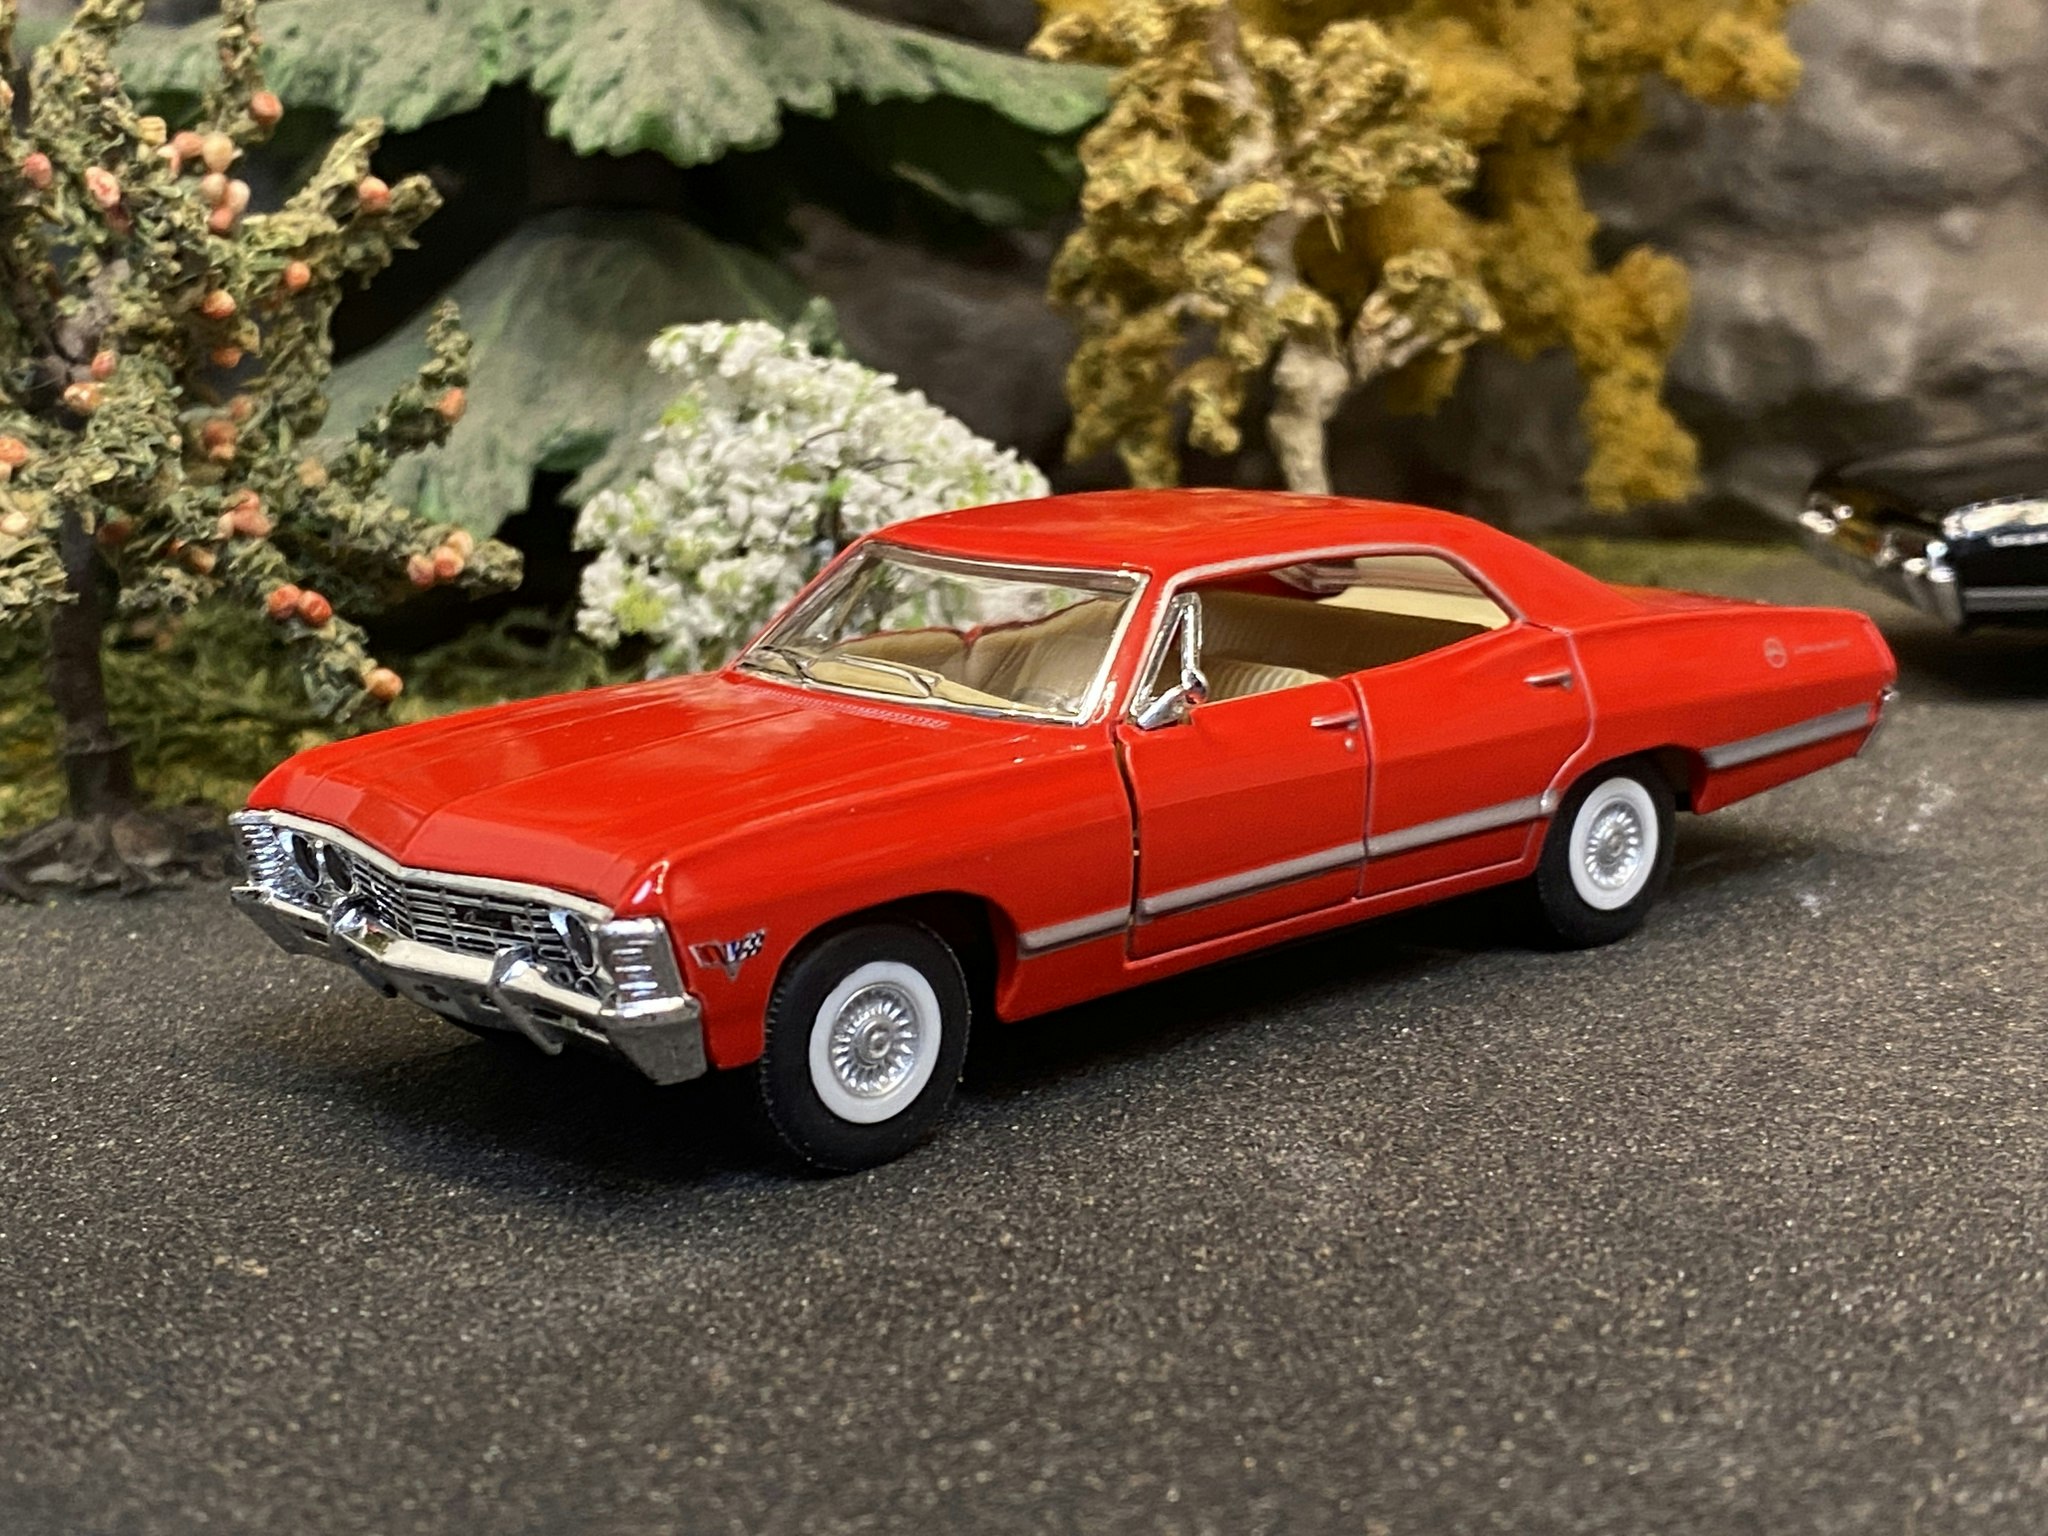 Skala 1/43 Chevrolet Impala 1967, Red fr Kinsmart